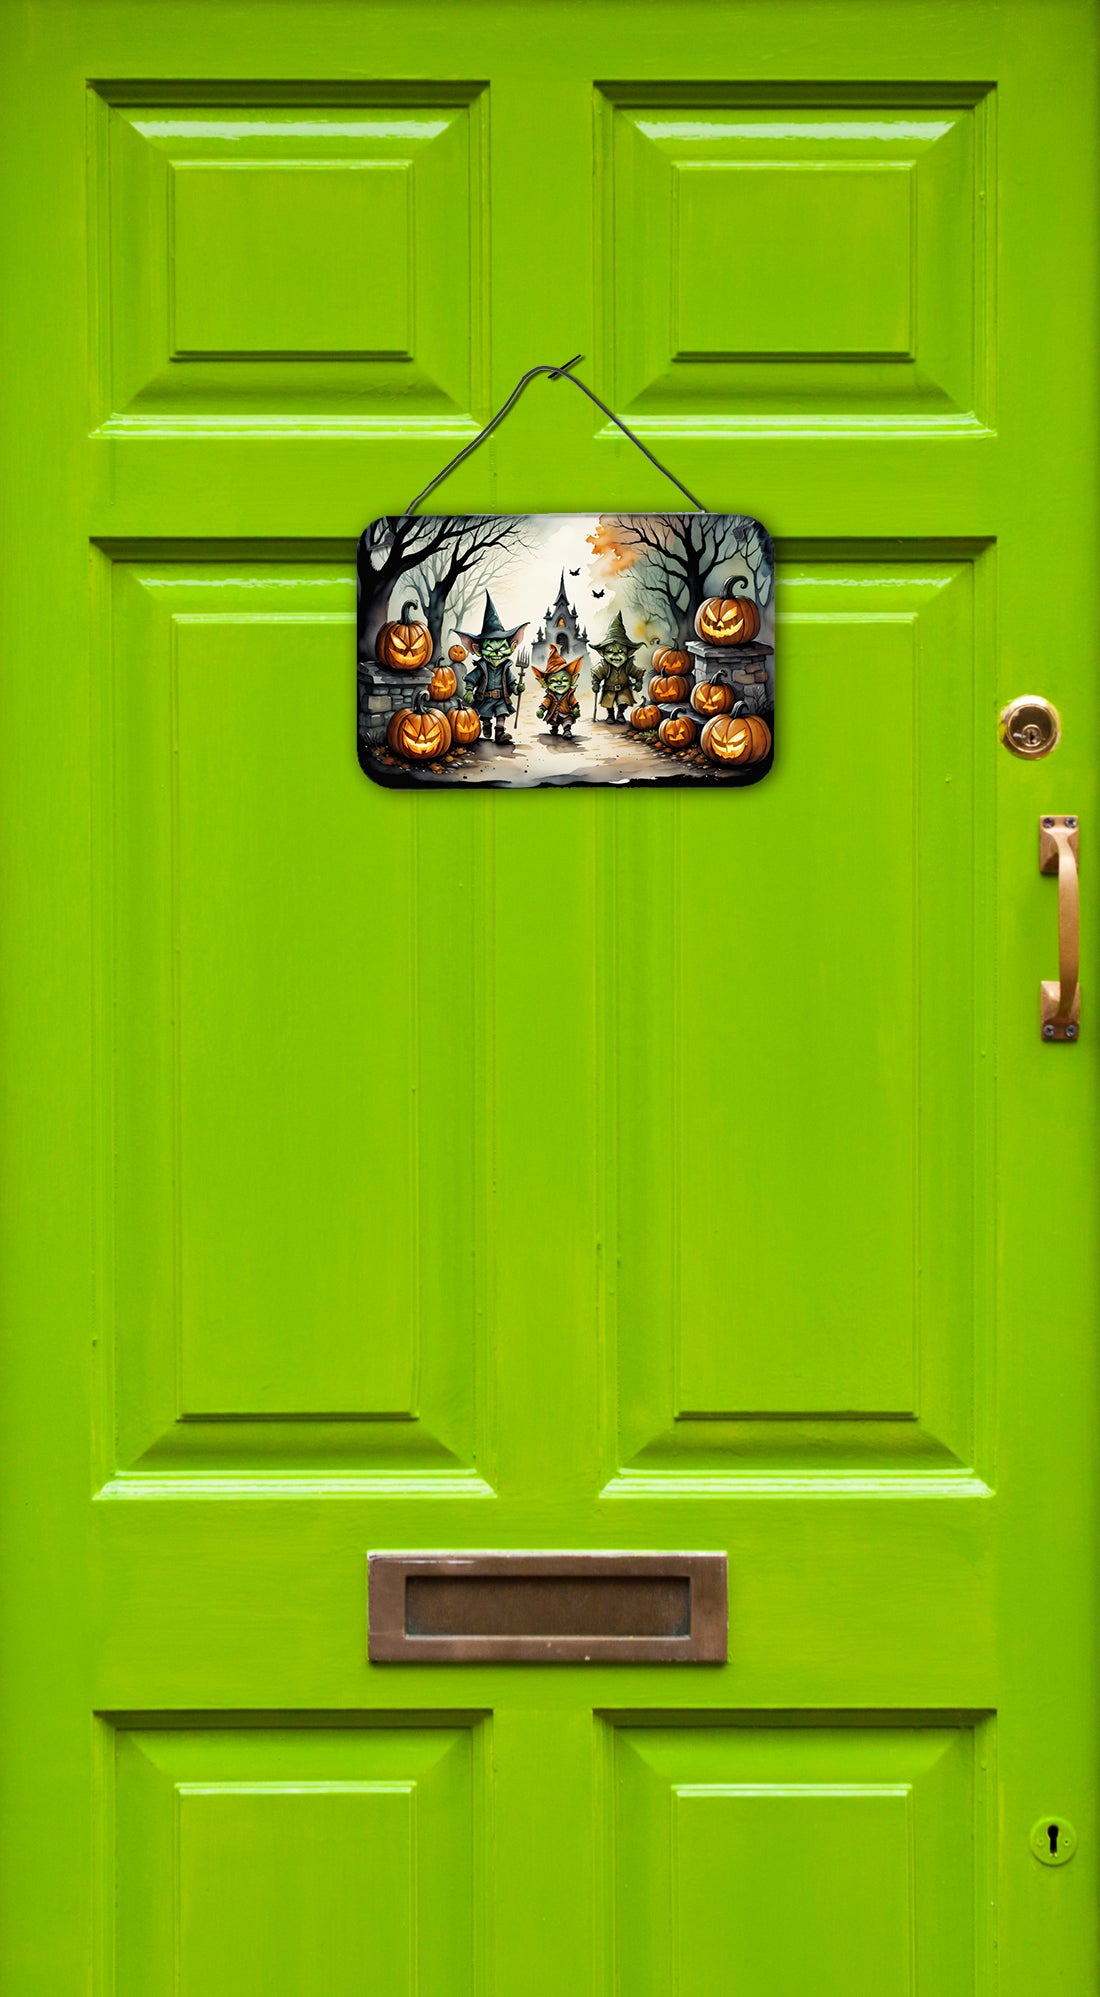 Goblins Spooky Halloween Wall or Door Hanging Prints